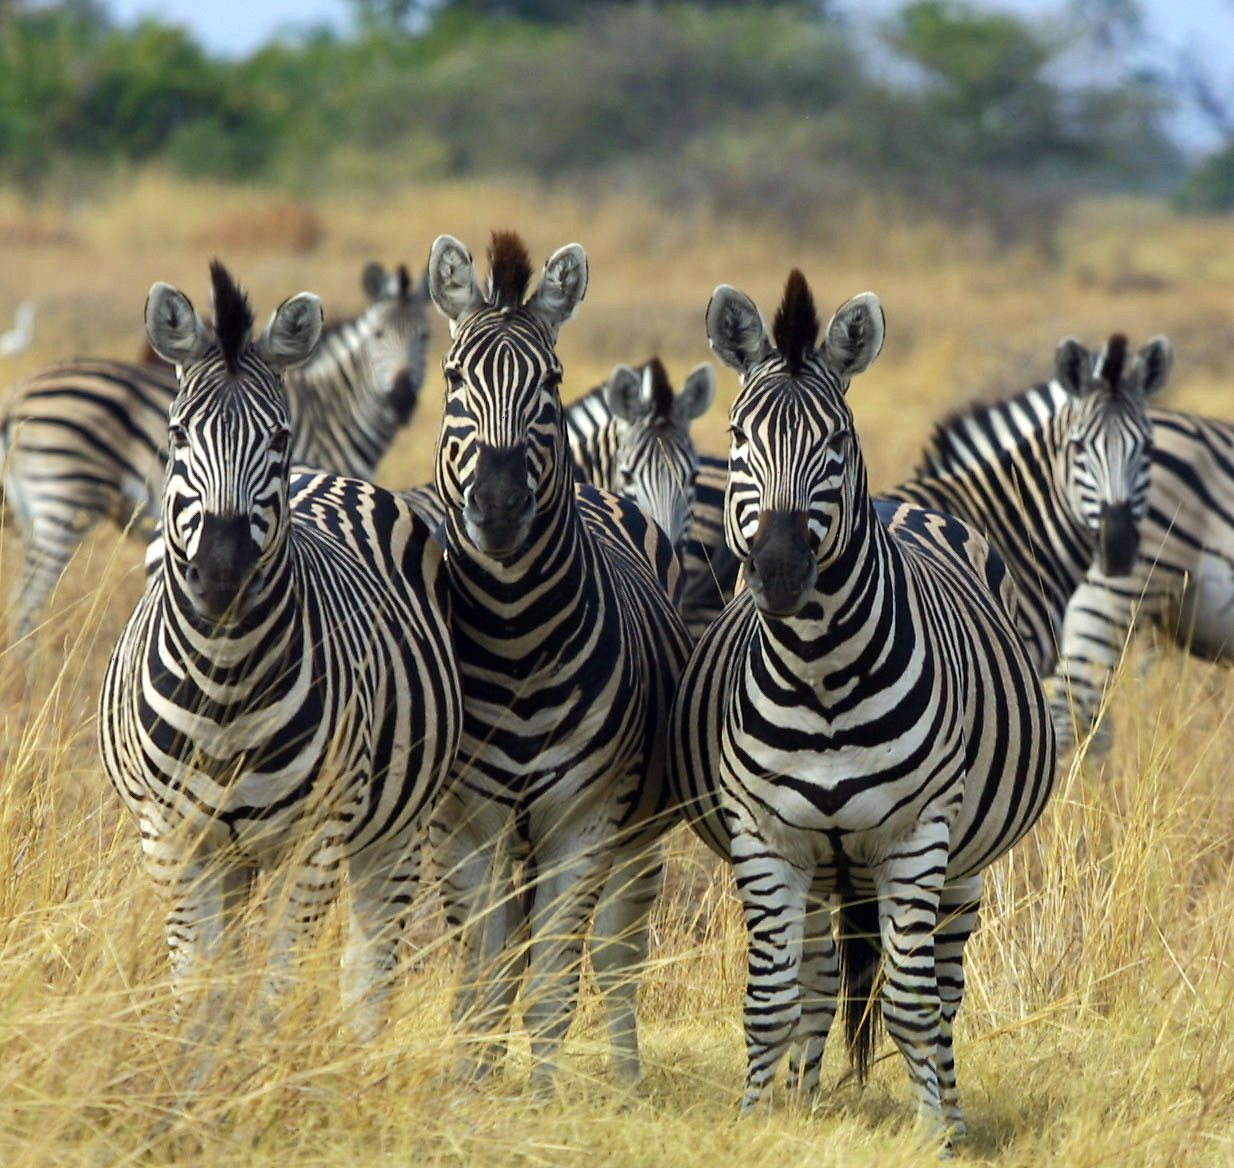 Plains Zebras (Equus quagga), more specifically the Chapman's subspecies (Equus quagga chapmani) in Okavango, Botswana in 2002.